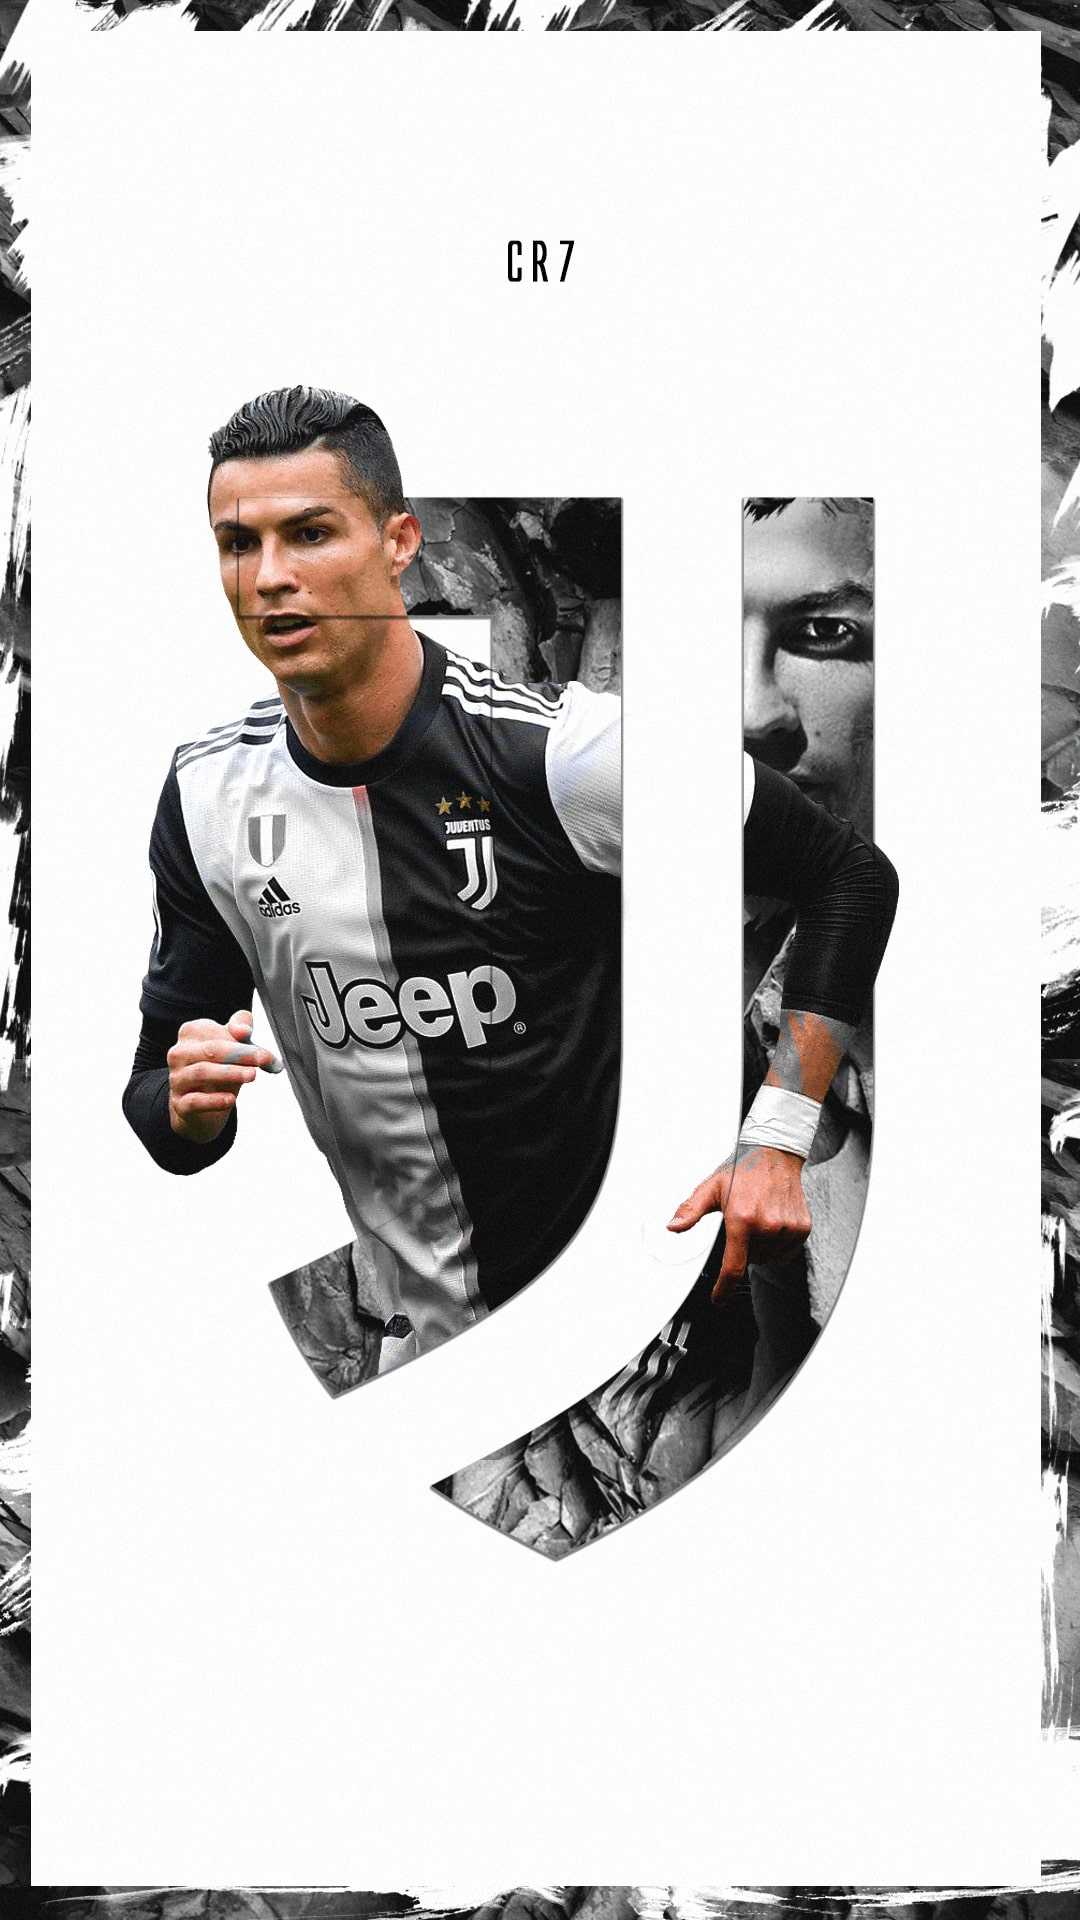 Juventus Ronaldo Wallpaper Kolpaper Awesome Free Hd Wallpapers